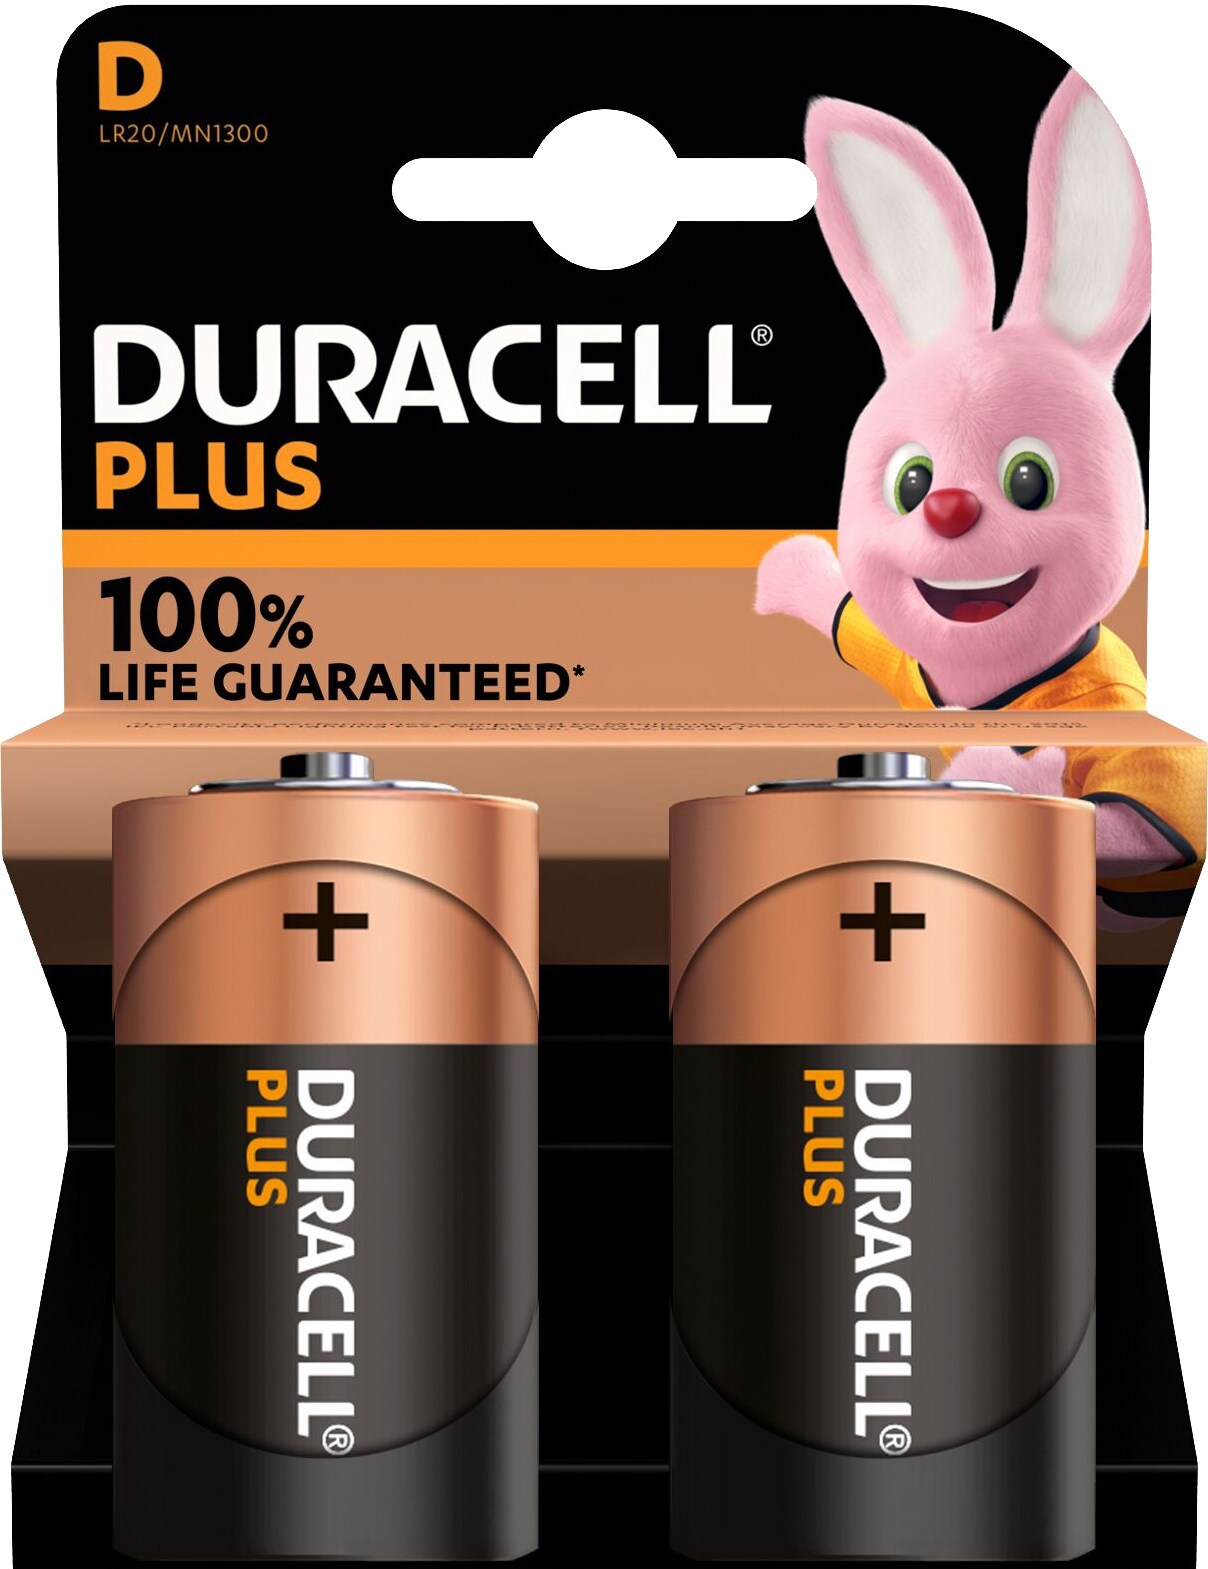 Duracell Plus Power D batteripakke (2pk) thumbnail